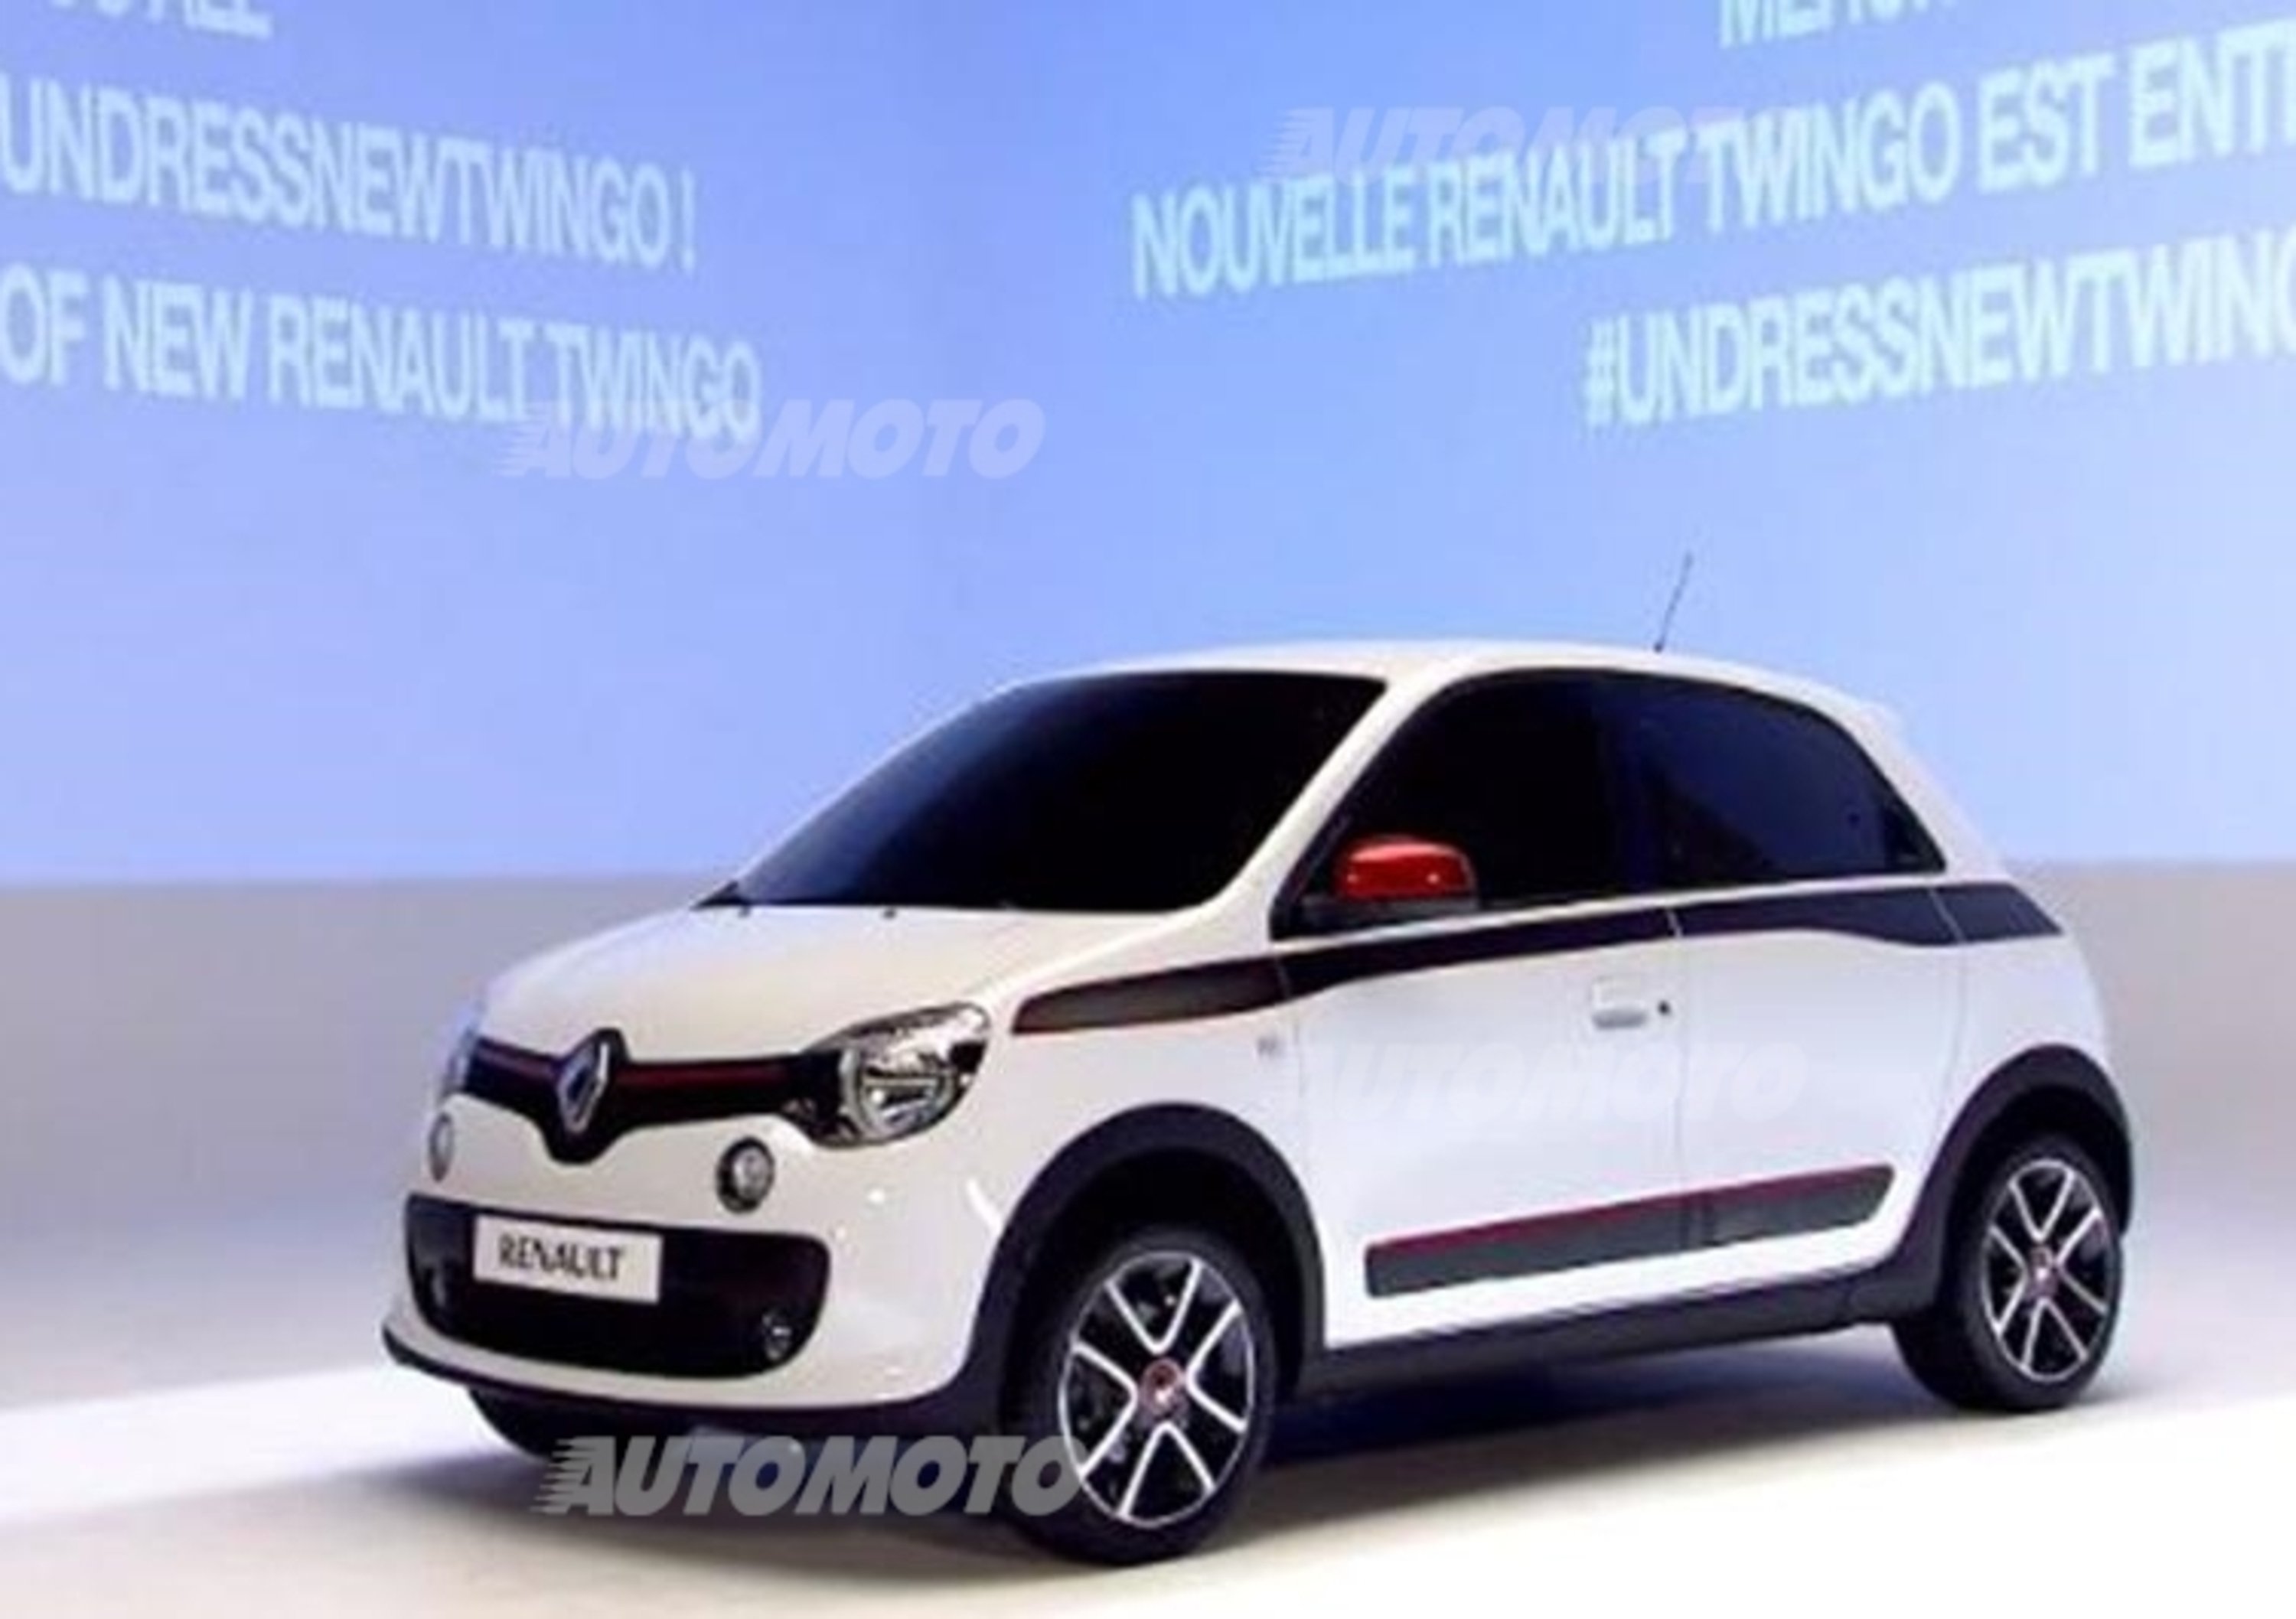 Nuova Renault Twingo: svelata la nuova compatta della Losanga